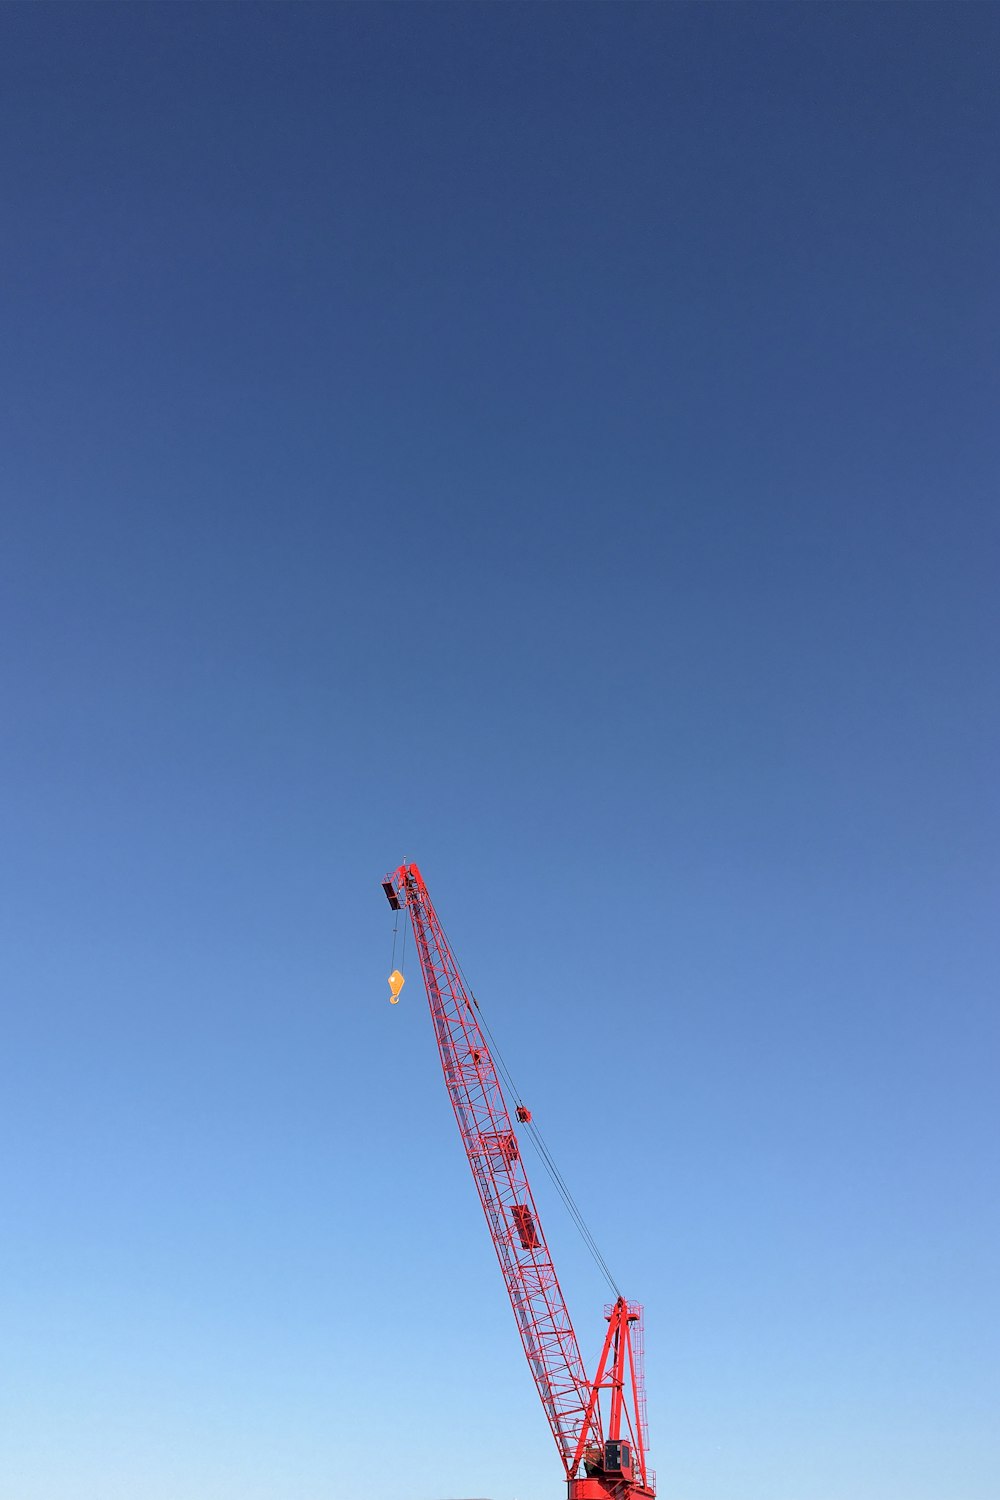 grulla naranja bajo el cielo azul durante el día